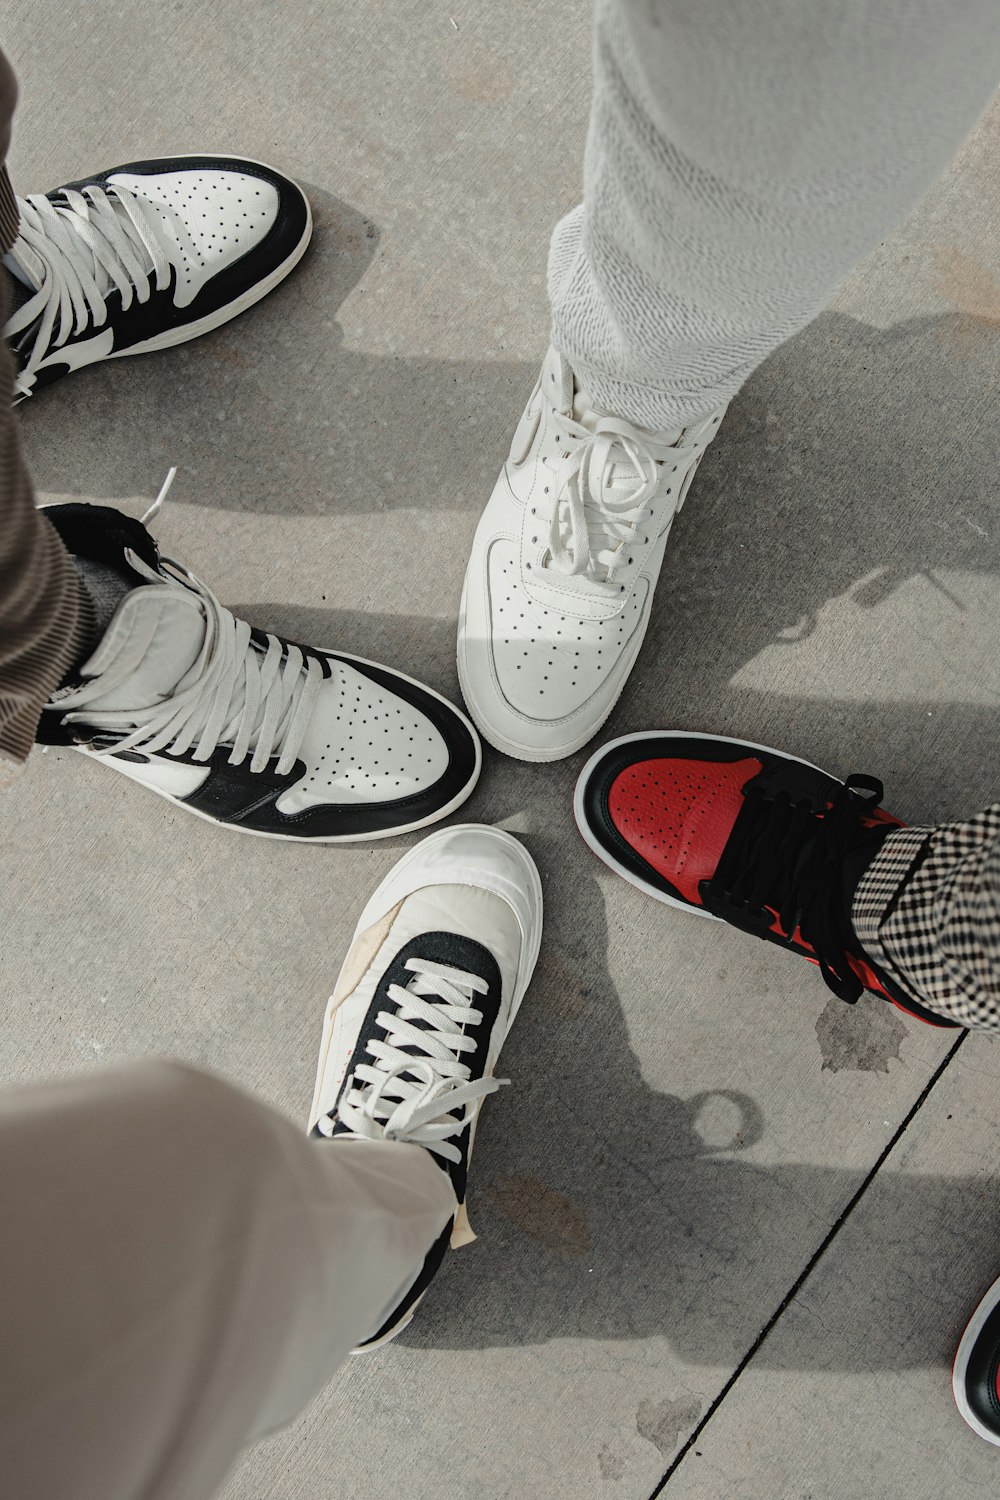 Foto Persona con zapatillas nike blancas y rojas gratis Unsplash